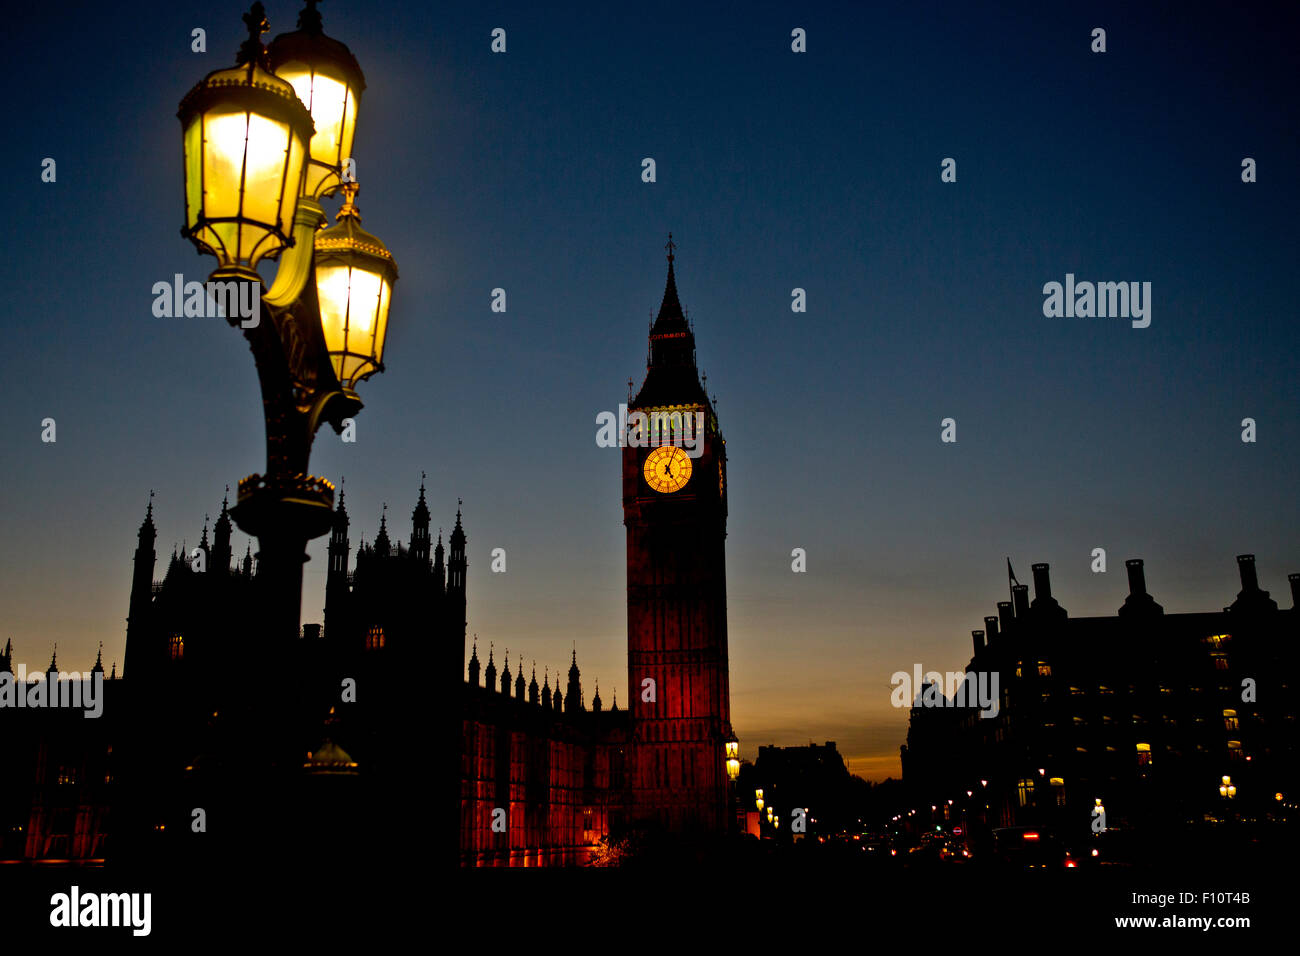 Abend Zeit Big Ben Parlament London nach dunklen leuchtende Lampen gelb blauen Himmel leichte Dämmerung Dächer-Touristenattraktion Brücke Stockfoto